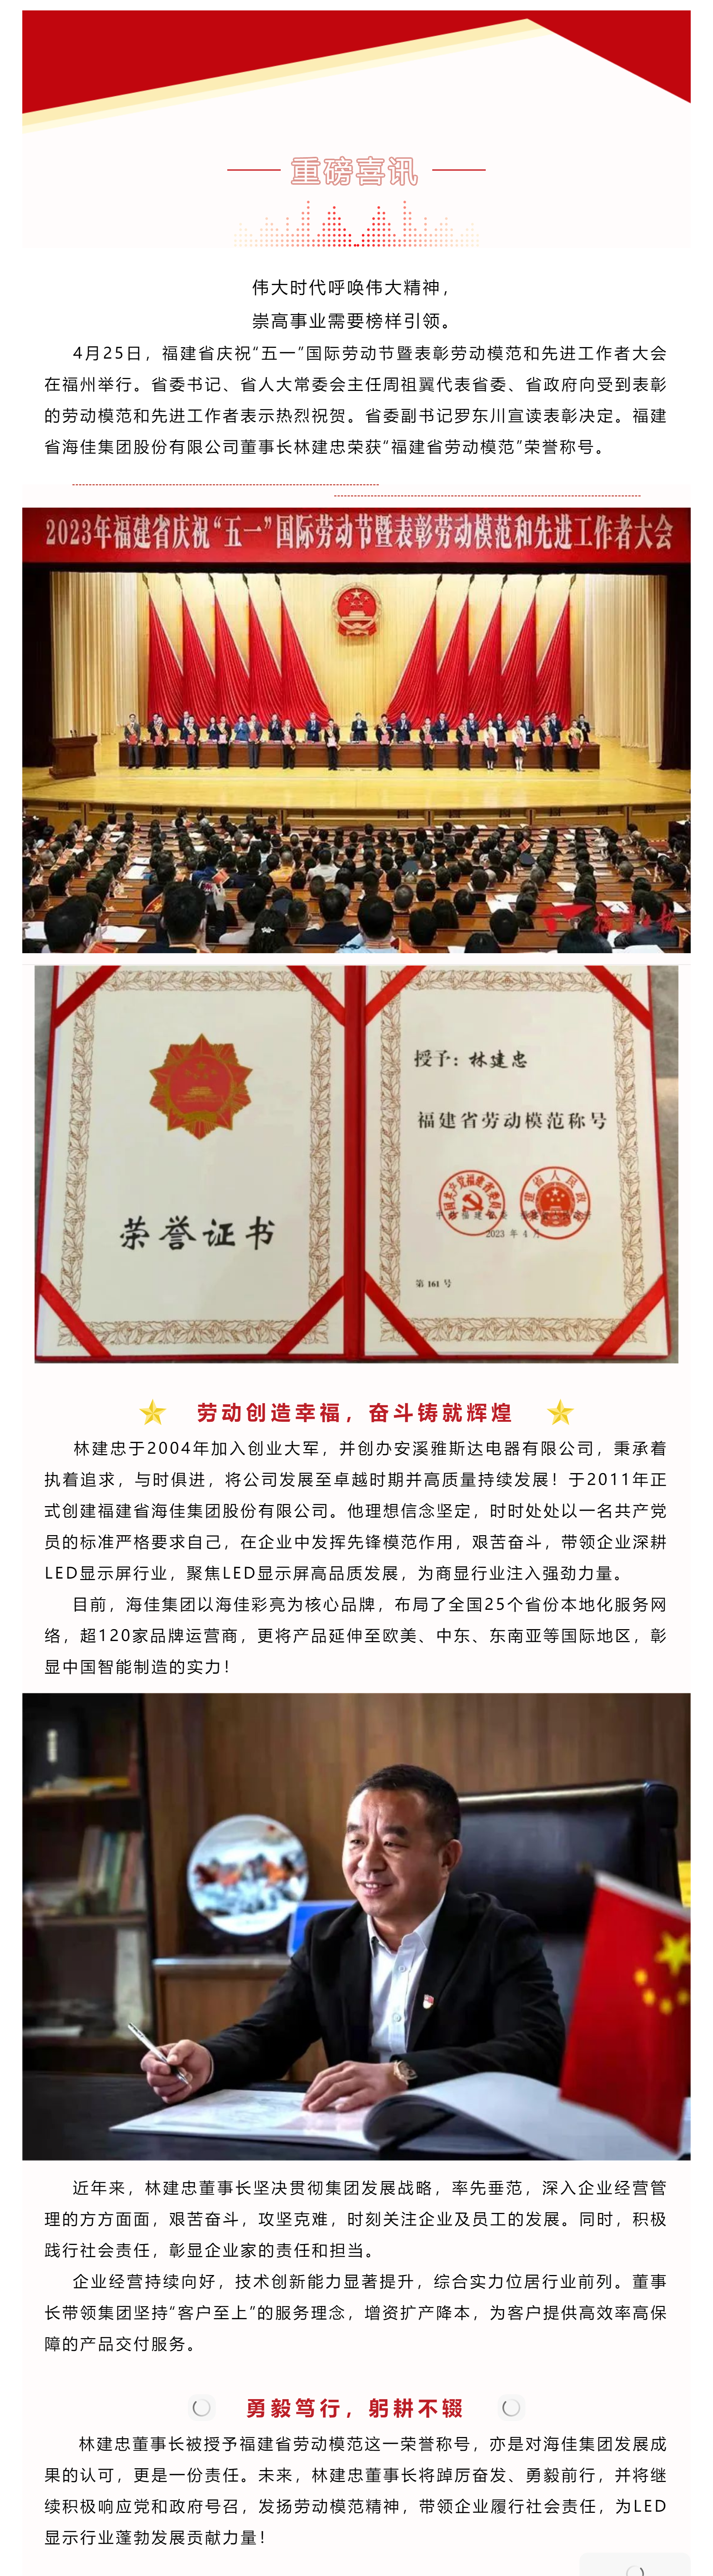 喜讯 _ 海佳集团董事长林建忠被授予“福建省劳动模范”荣誉称号.png